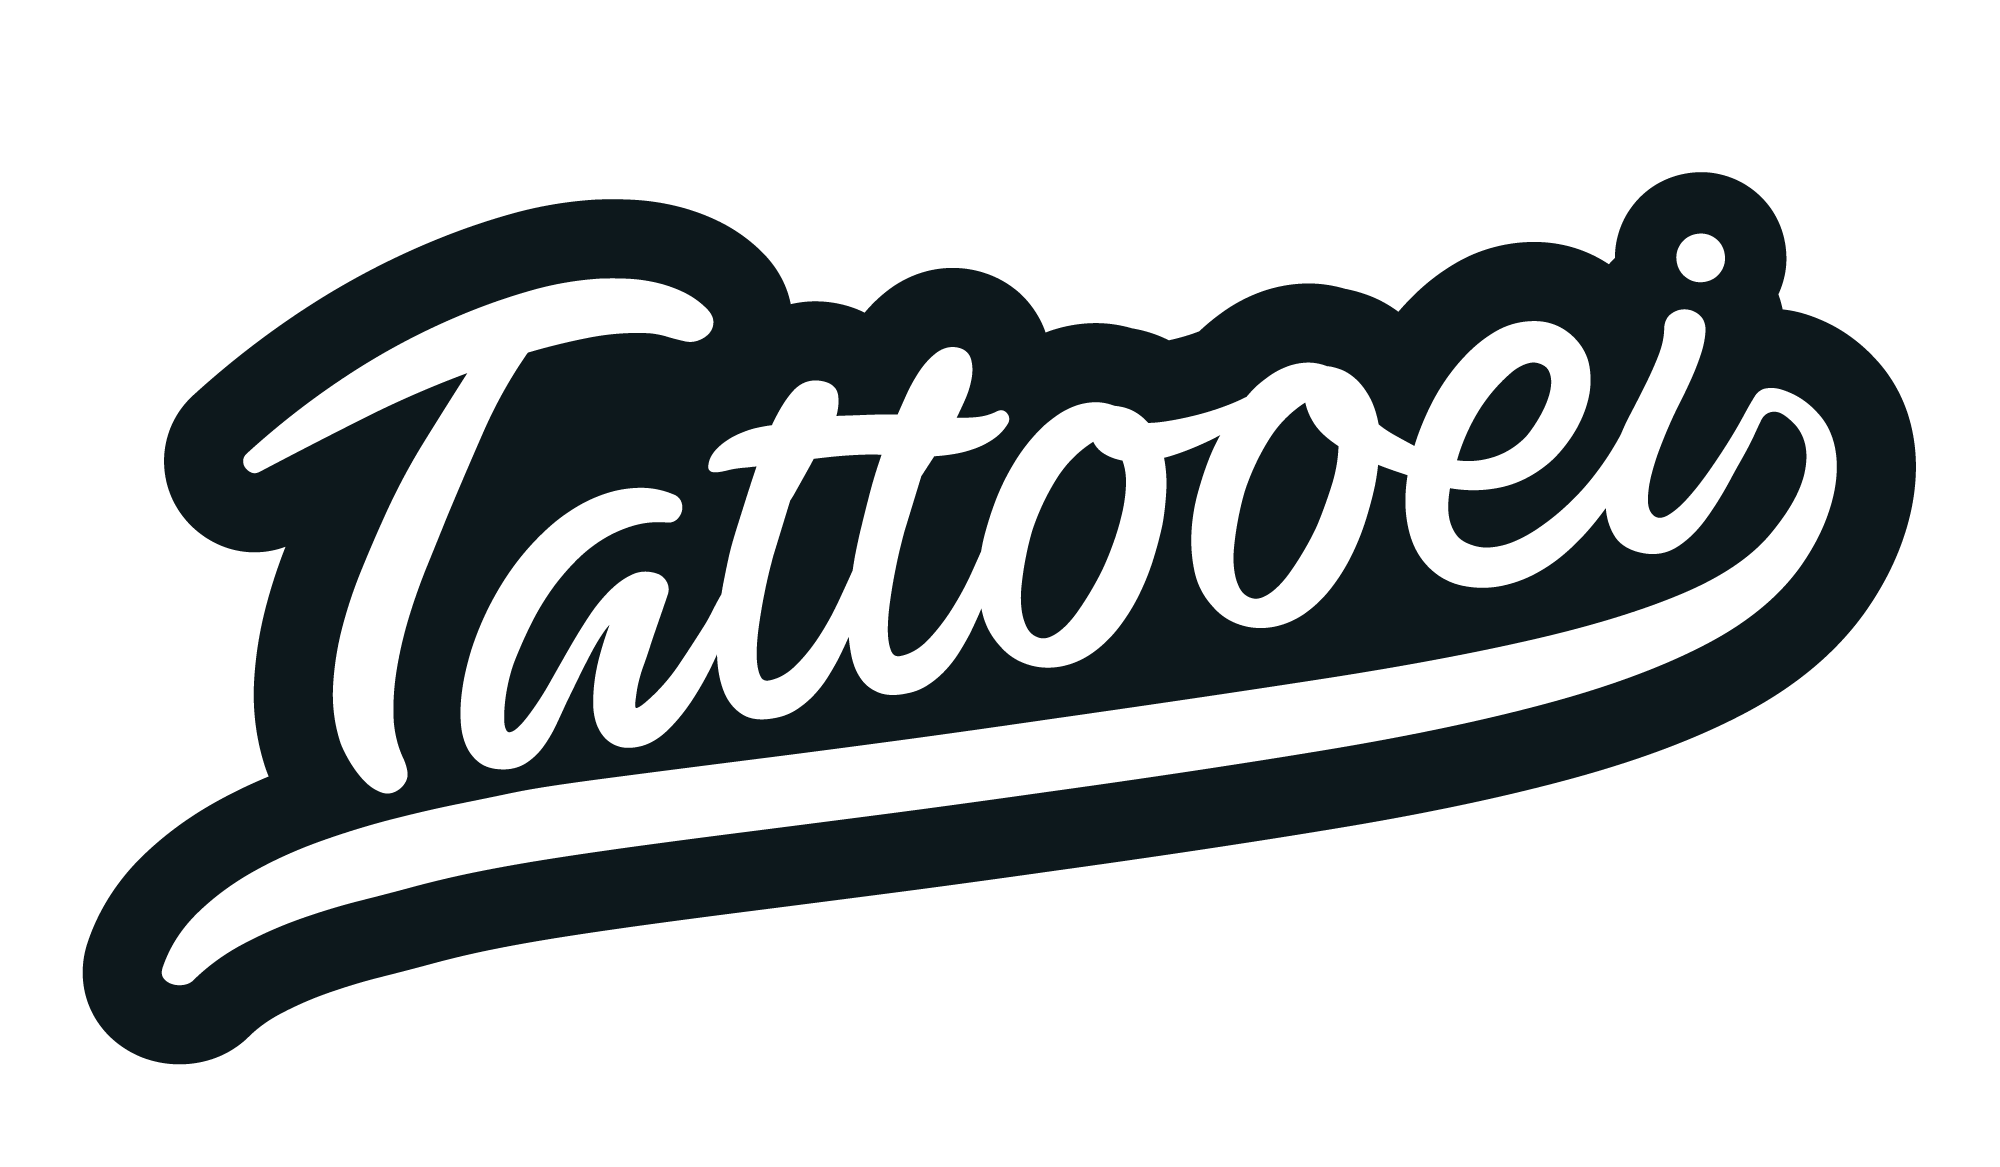 Tattooei